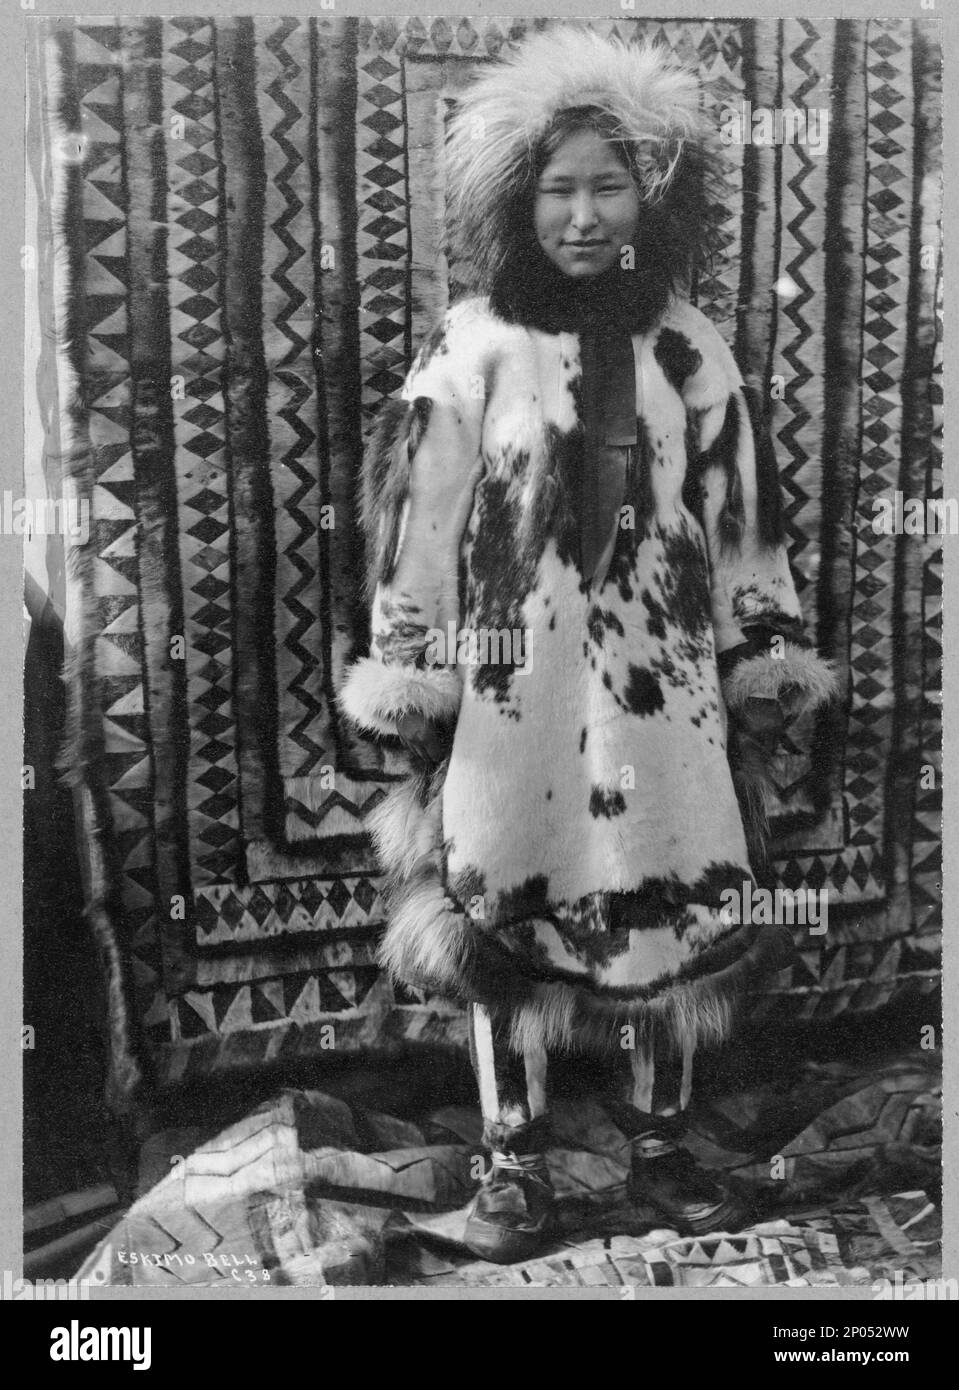 Eskimo ragazza vestendo di tutte le pellicce, Eskimo campana cioè belle.  Frank and Frances Carpenter Collection, regalo; Sig.ra W. Chapin  Huntington; 1951, Eskimos, Abbigliamento e vestito, Alaska, 1890-1940,  Eskimos, Donne, Alaska, 1890-1940,